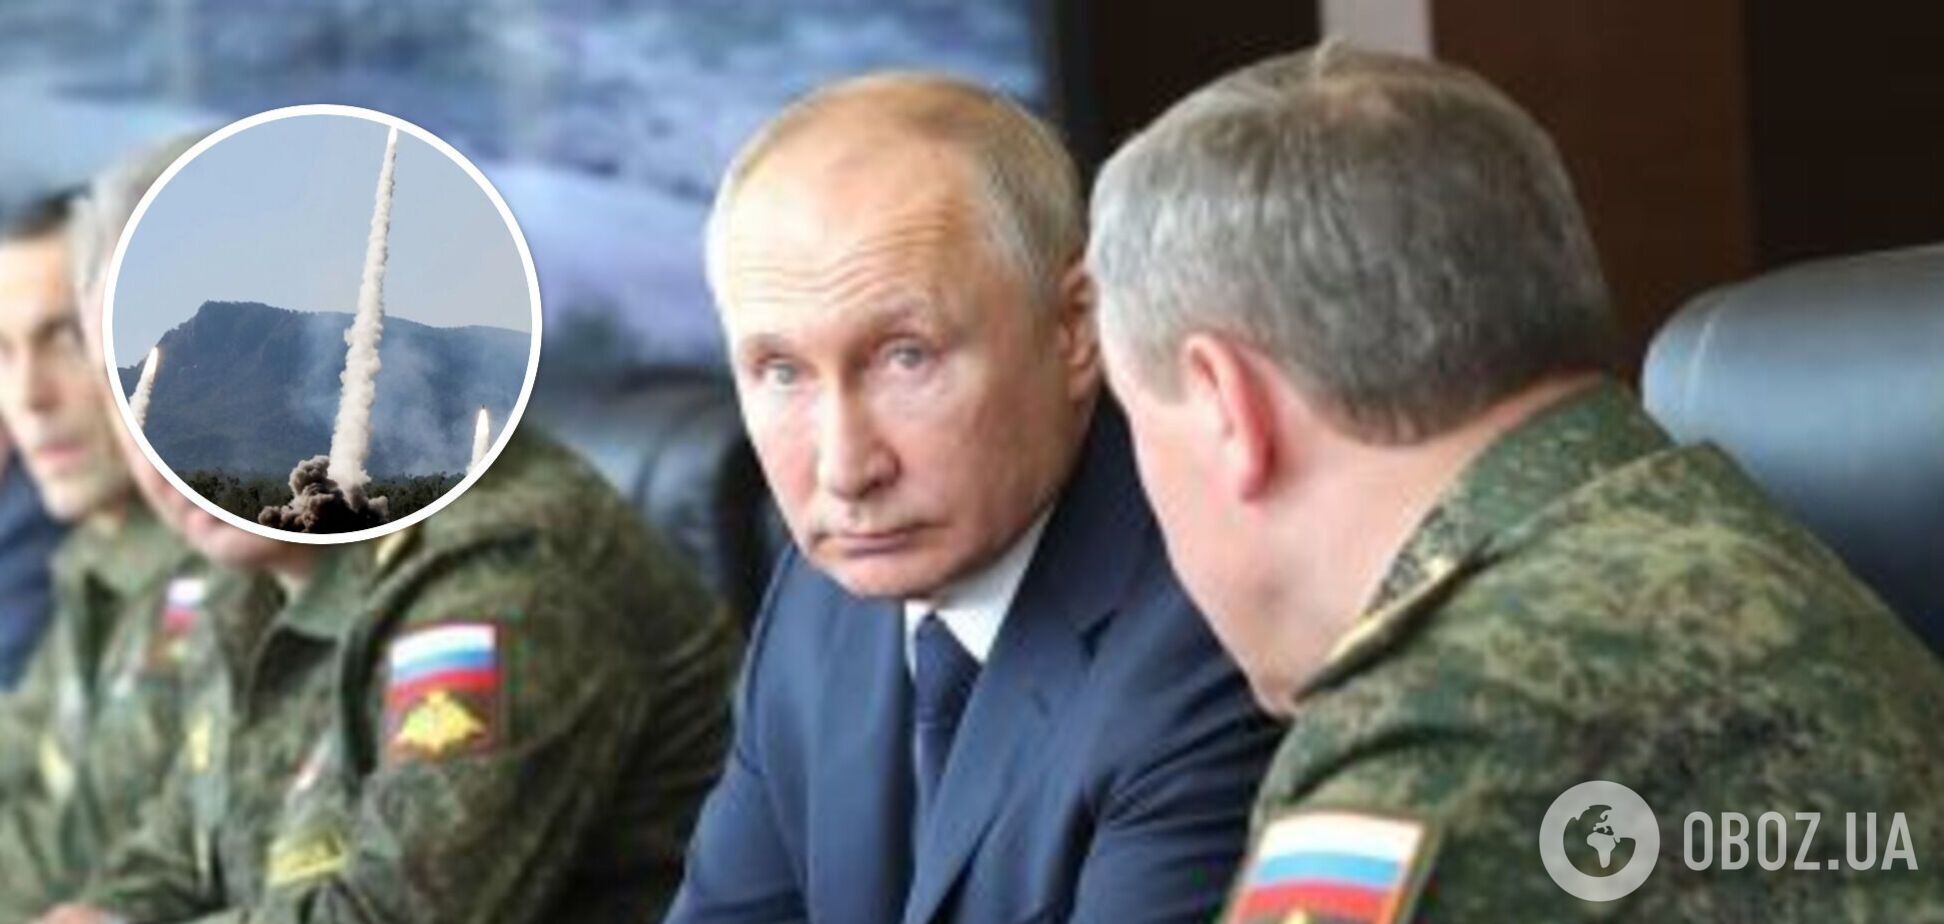 Ударне угруповання РФ може з’явитися на півночі за три дні: Жирохов вказав на небезпеку